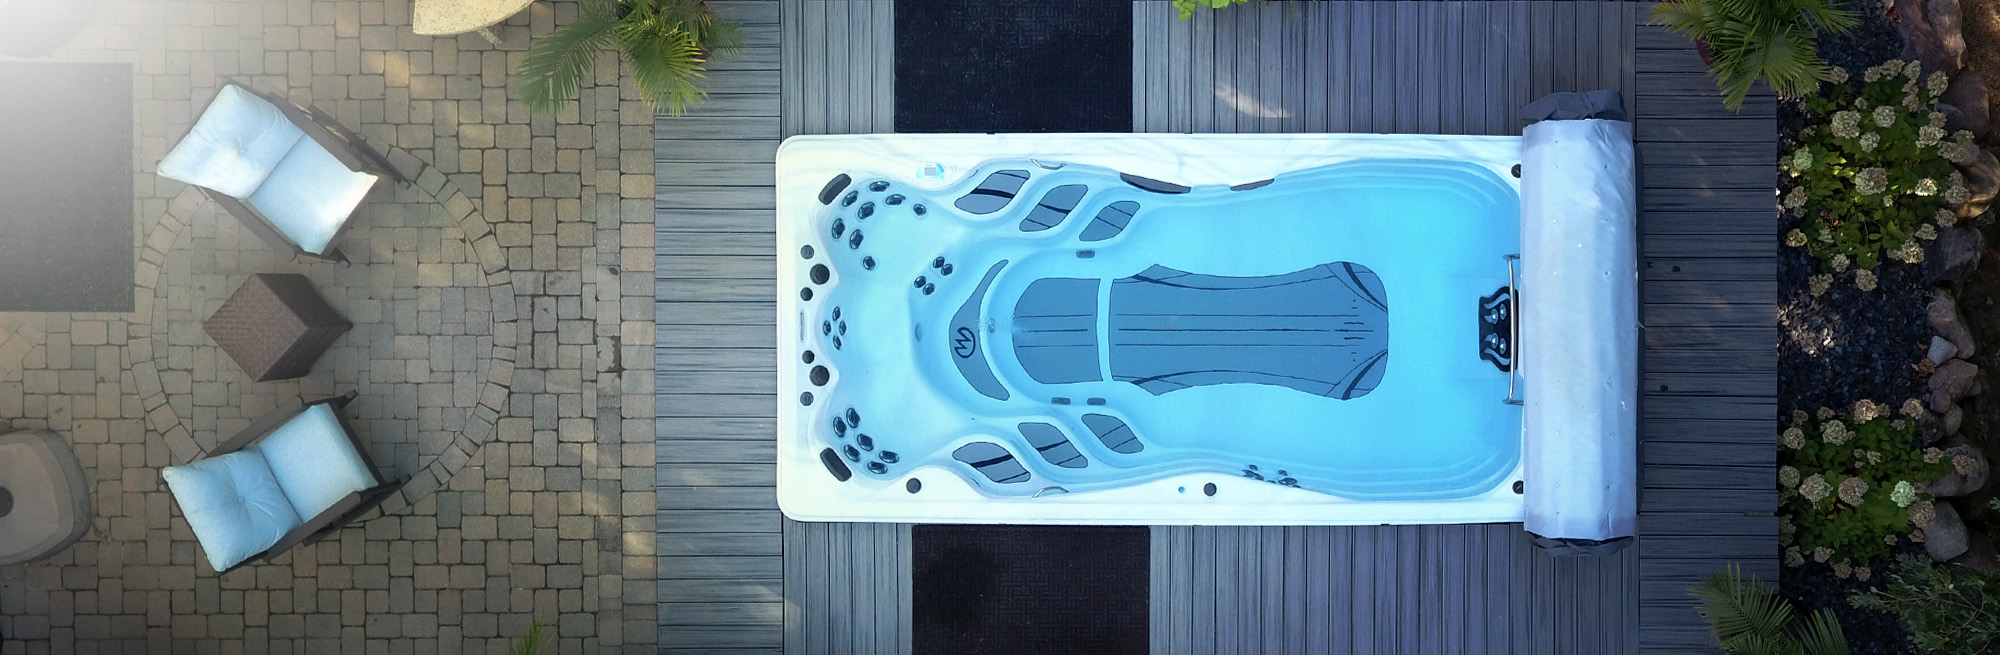 Dronebeeld van bovenaf van een zwemspa